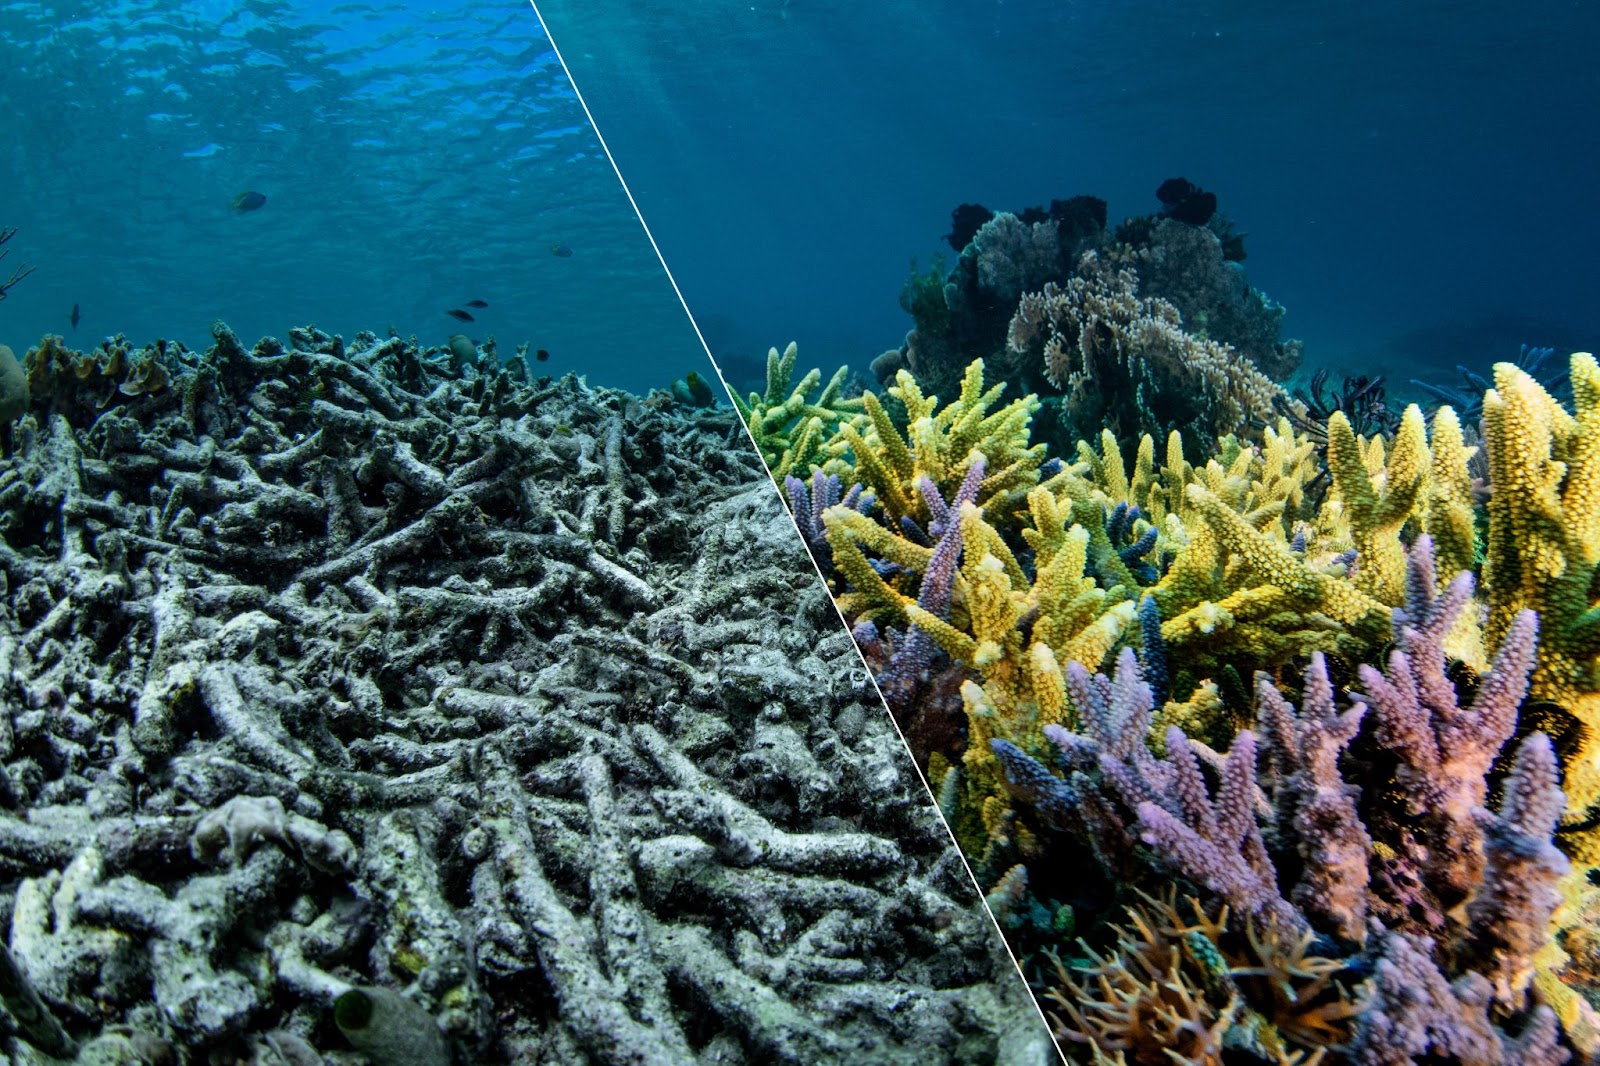 Une image de corail, divisée en deux : à gauche, le corail gris etincolore s'effondre tandis que la mer ondule au-dessus de lui. À droite, lecorail se tient debout, vibrant de jaune, de violet et de rose. Un contrasteentre le corail mourant et le corailsain